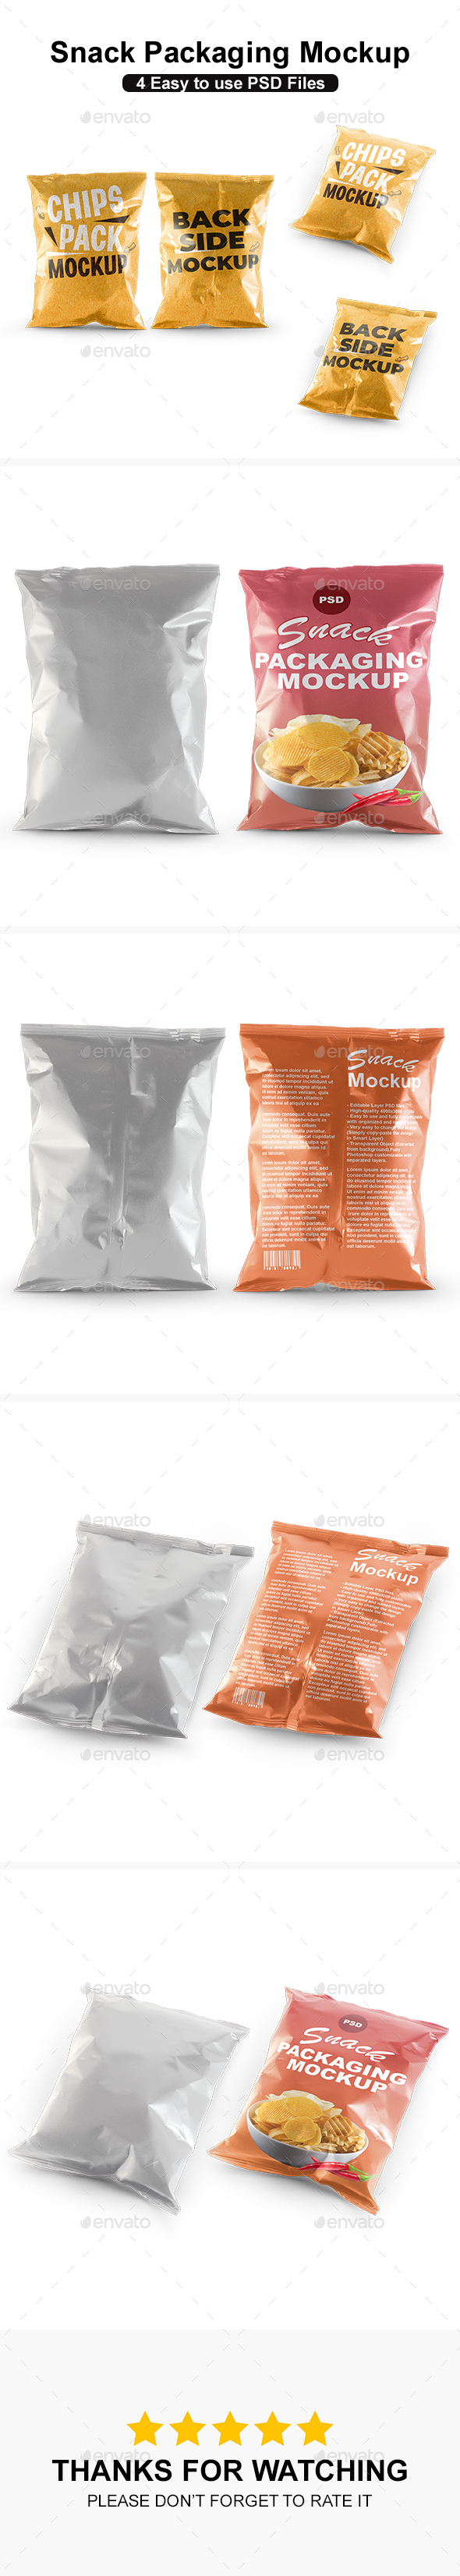 Snack Packaging Mockup